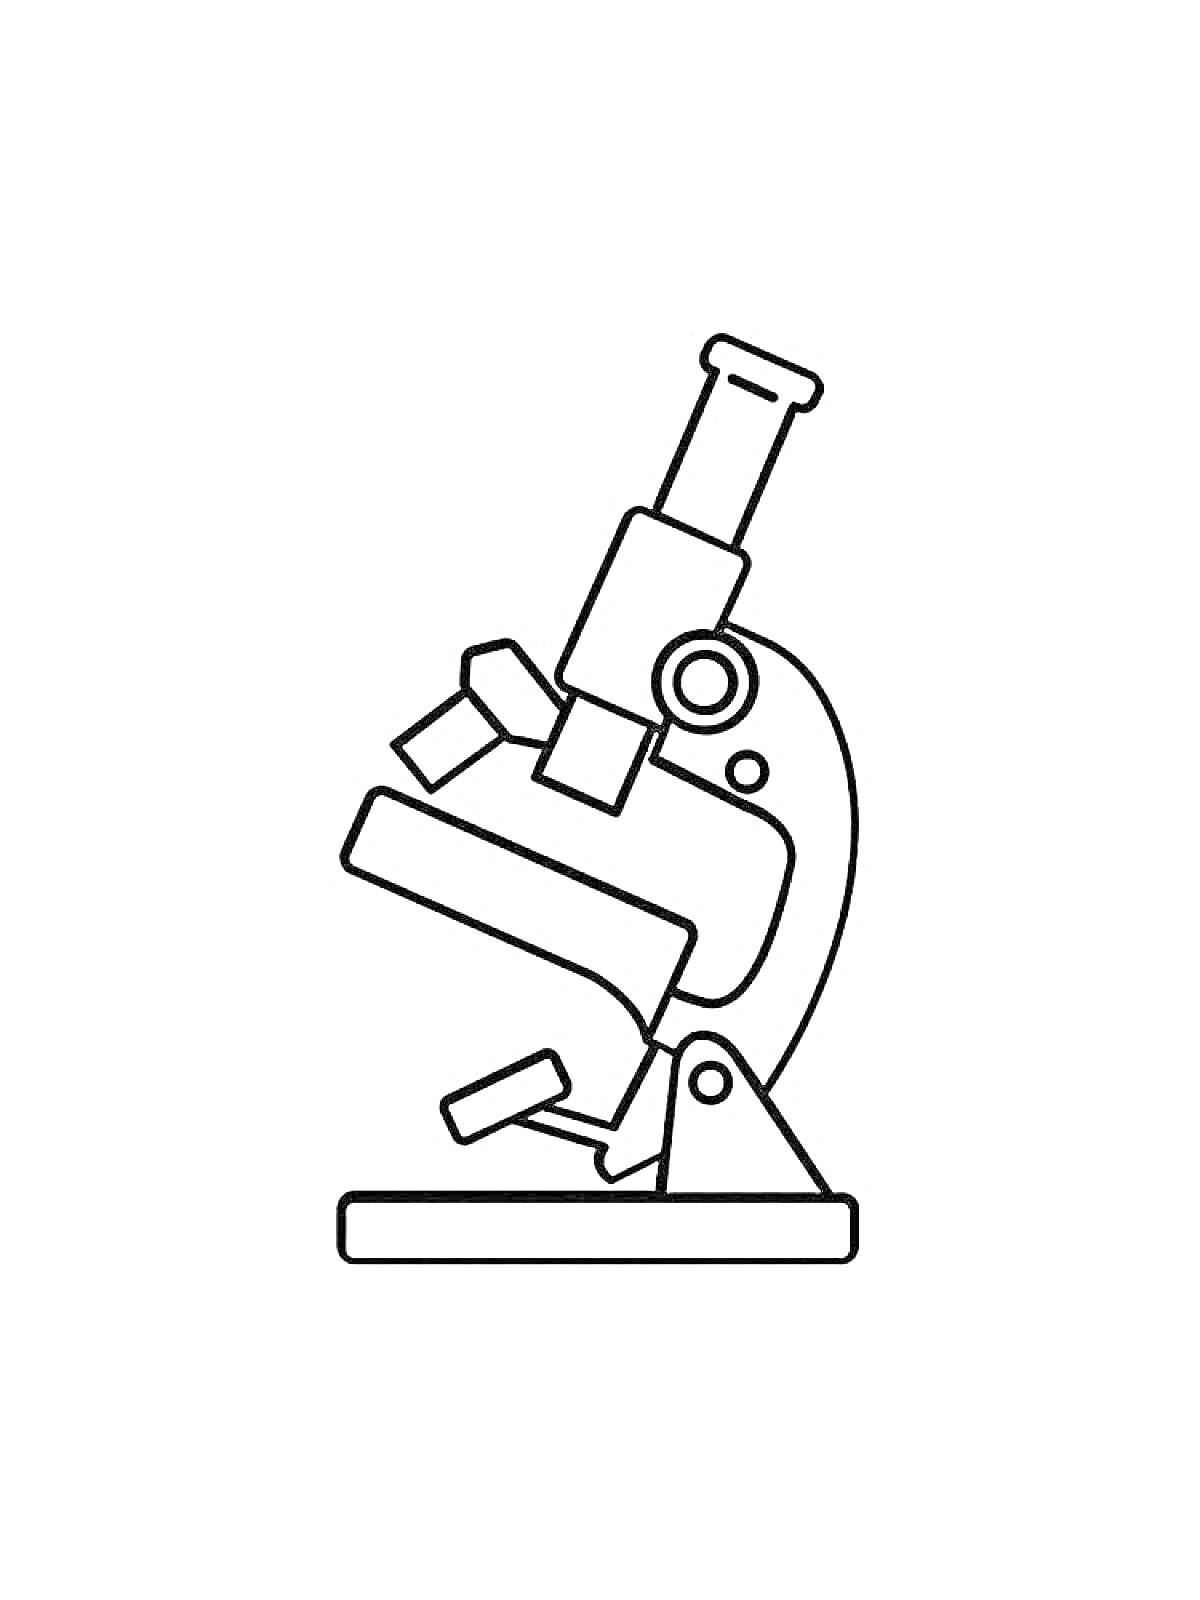 Микроскоп с окуляром, объективами, тубусом, предметным столиком, фокусировочным винтом и основанием